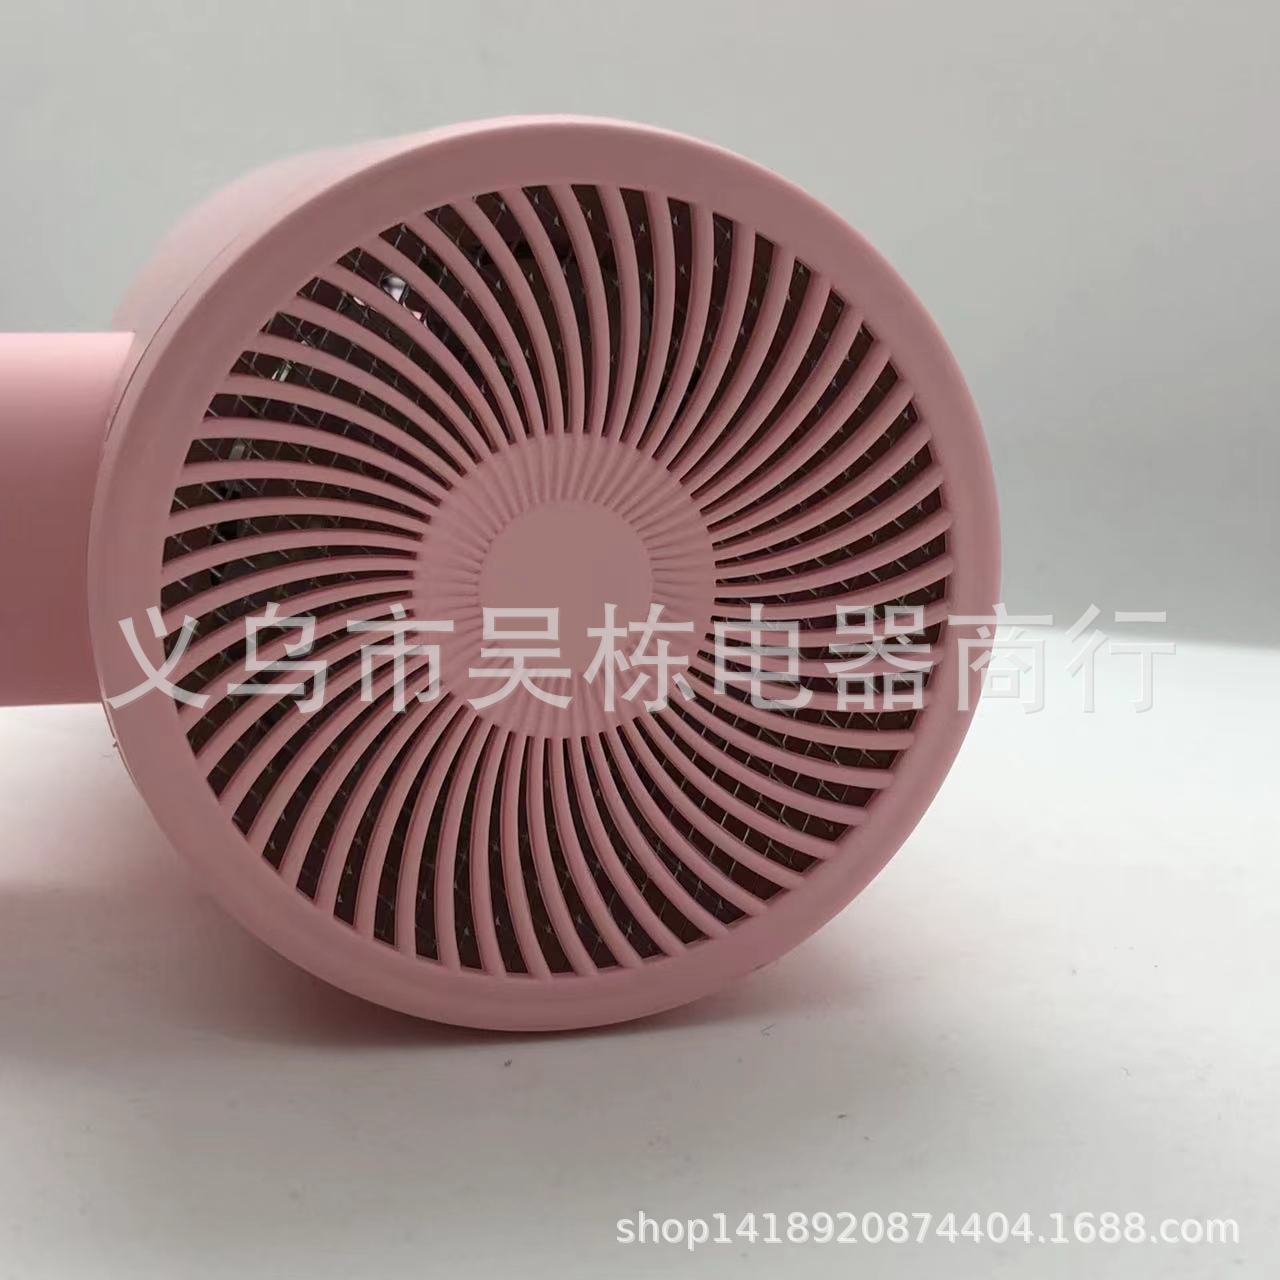 Bright 7150 Hair Dryer Hair Dryer 1500W White Pink